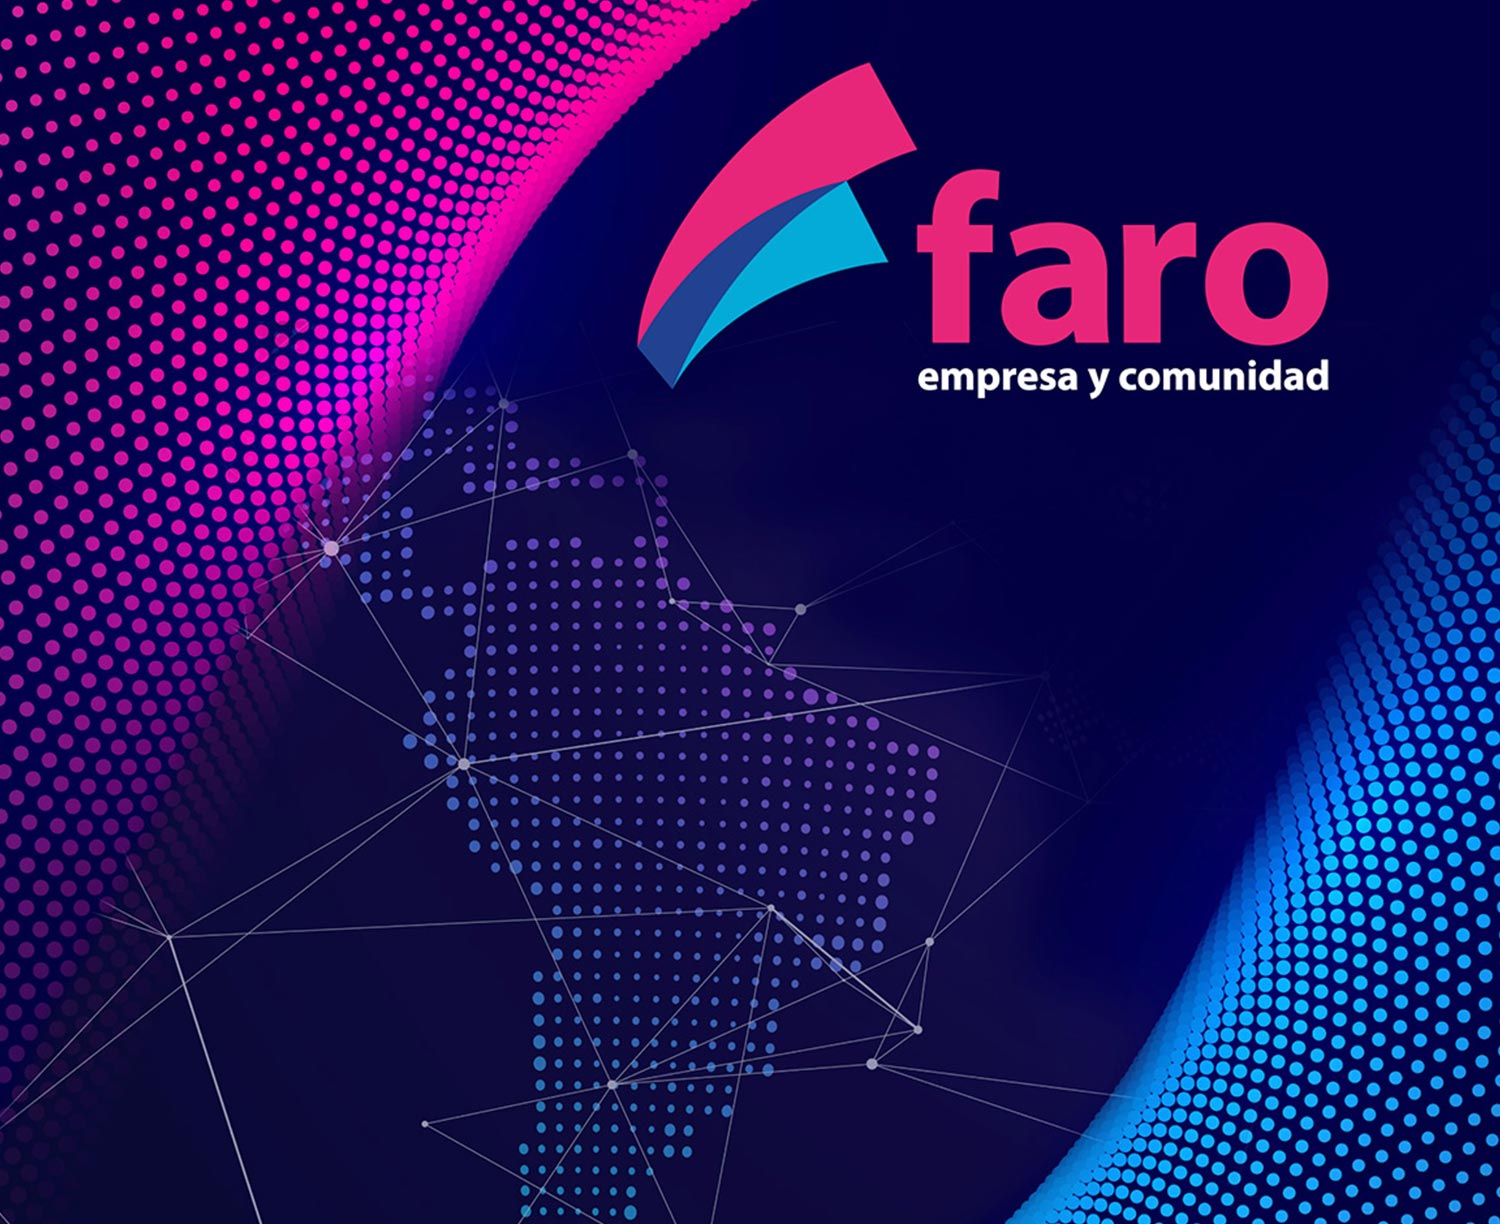 Portada de una publicación de los resultados de Faro, una herramienta de autoevaluación. El texto dice: faro, empresa y comunidad.